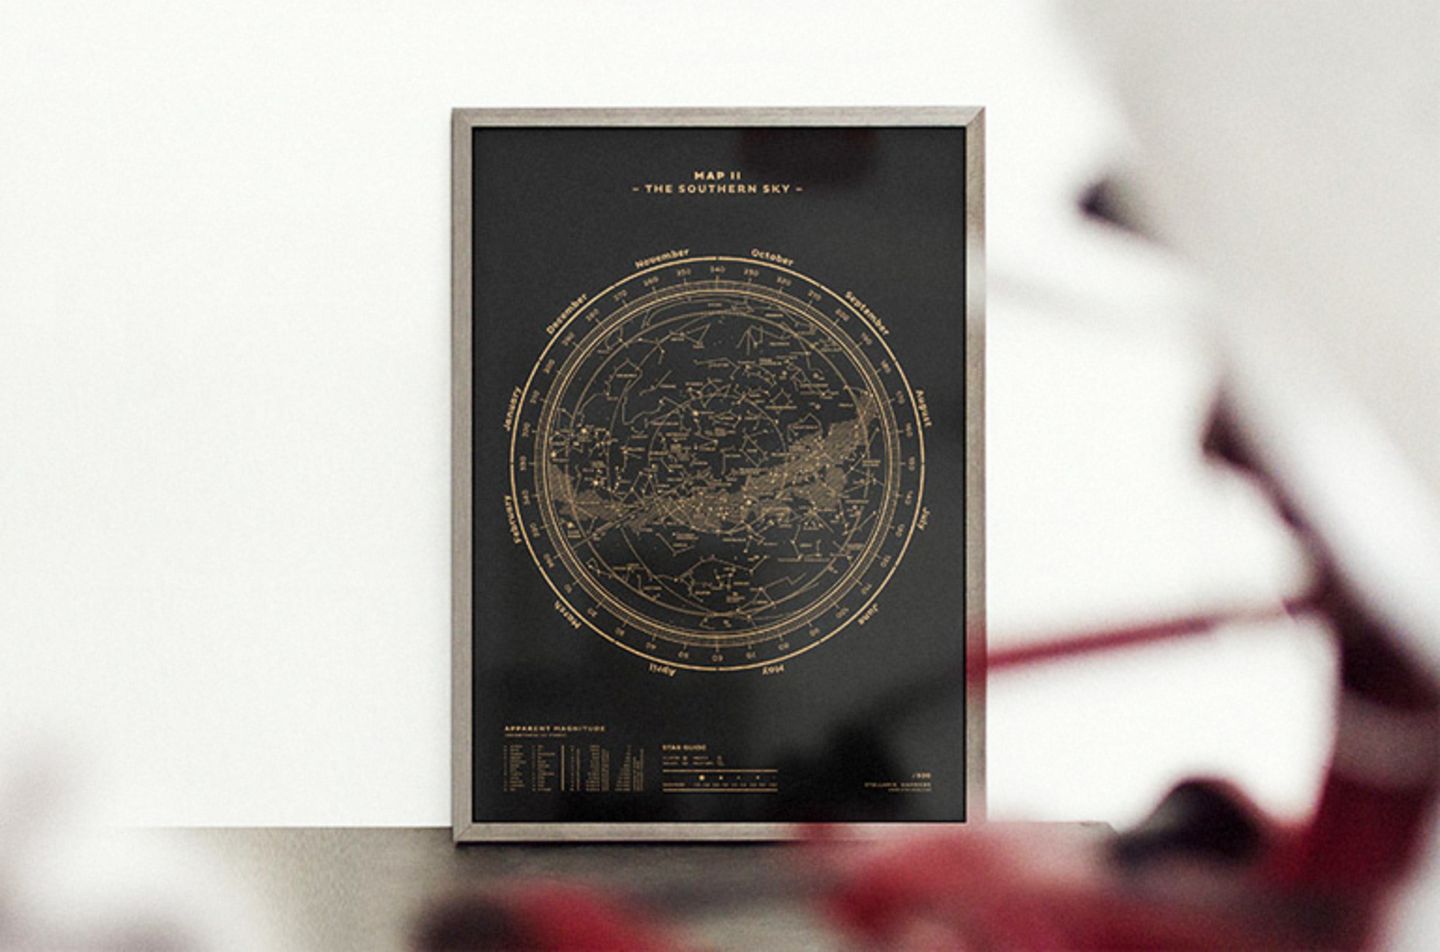 Sternenkarte als Kunstdruck: "Map" von Stellavie